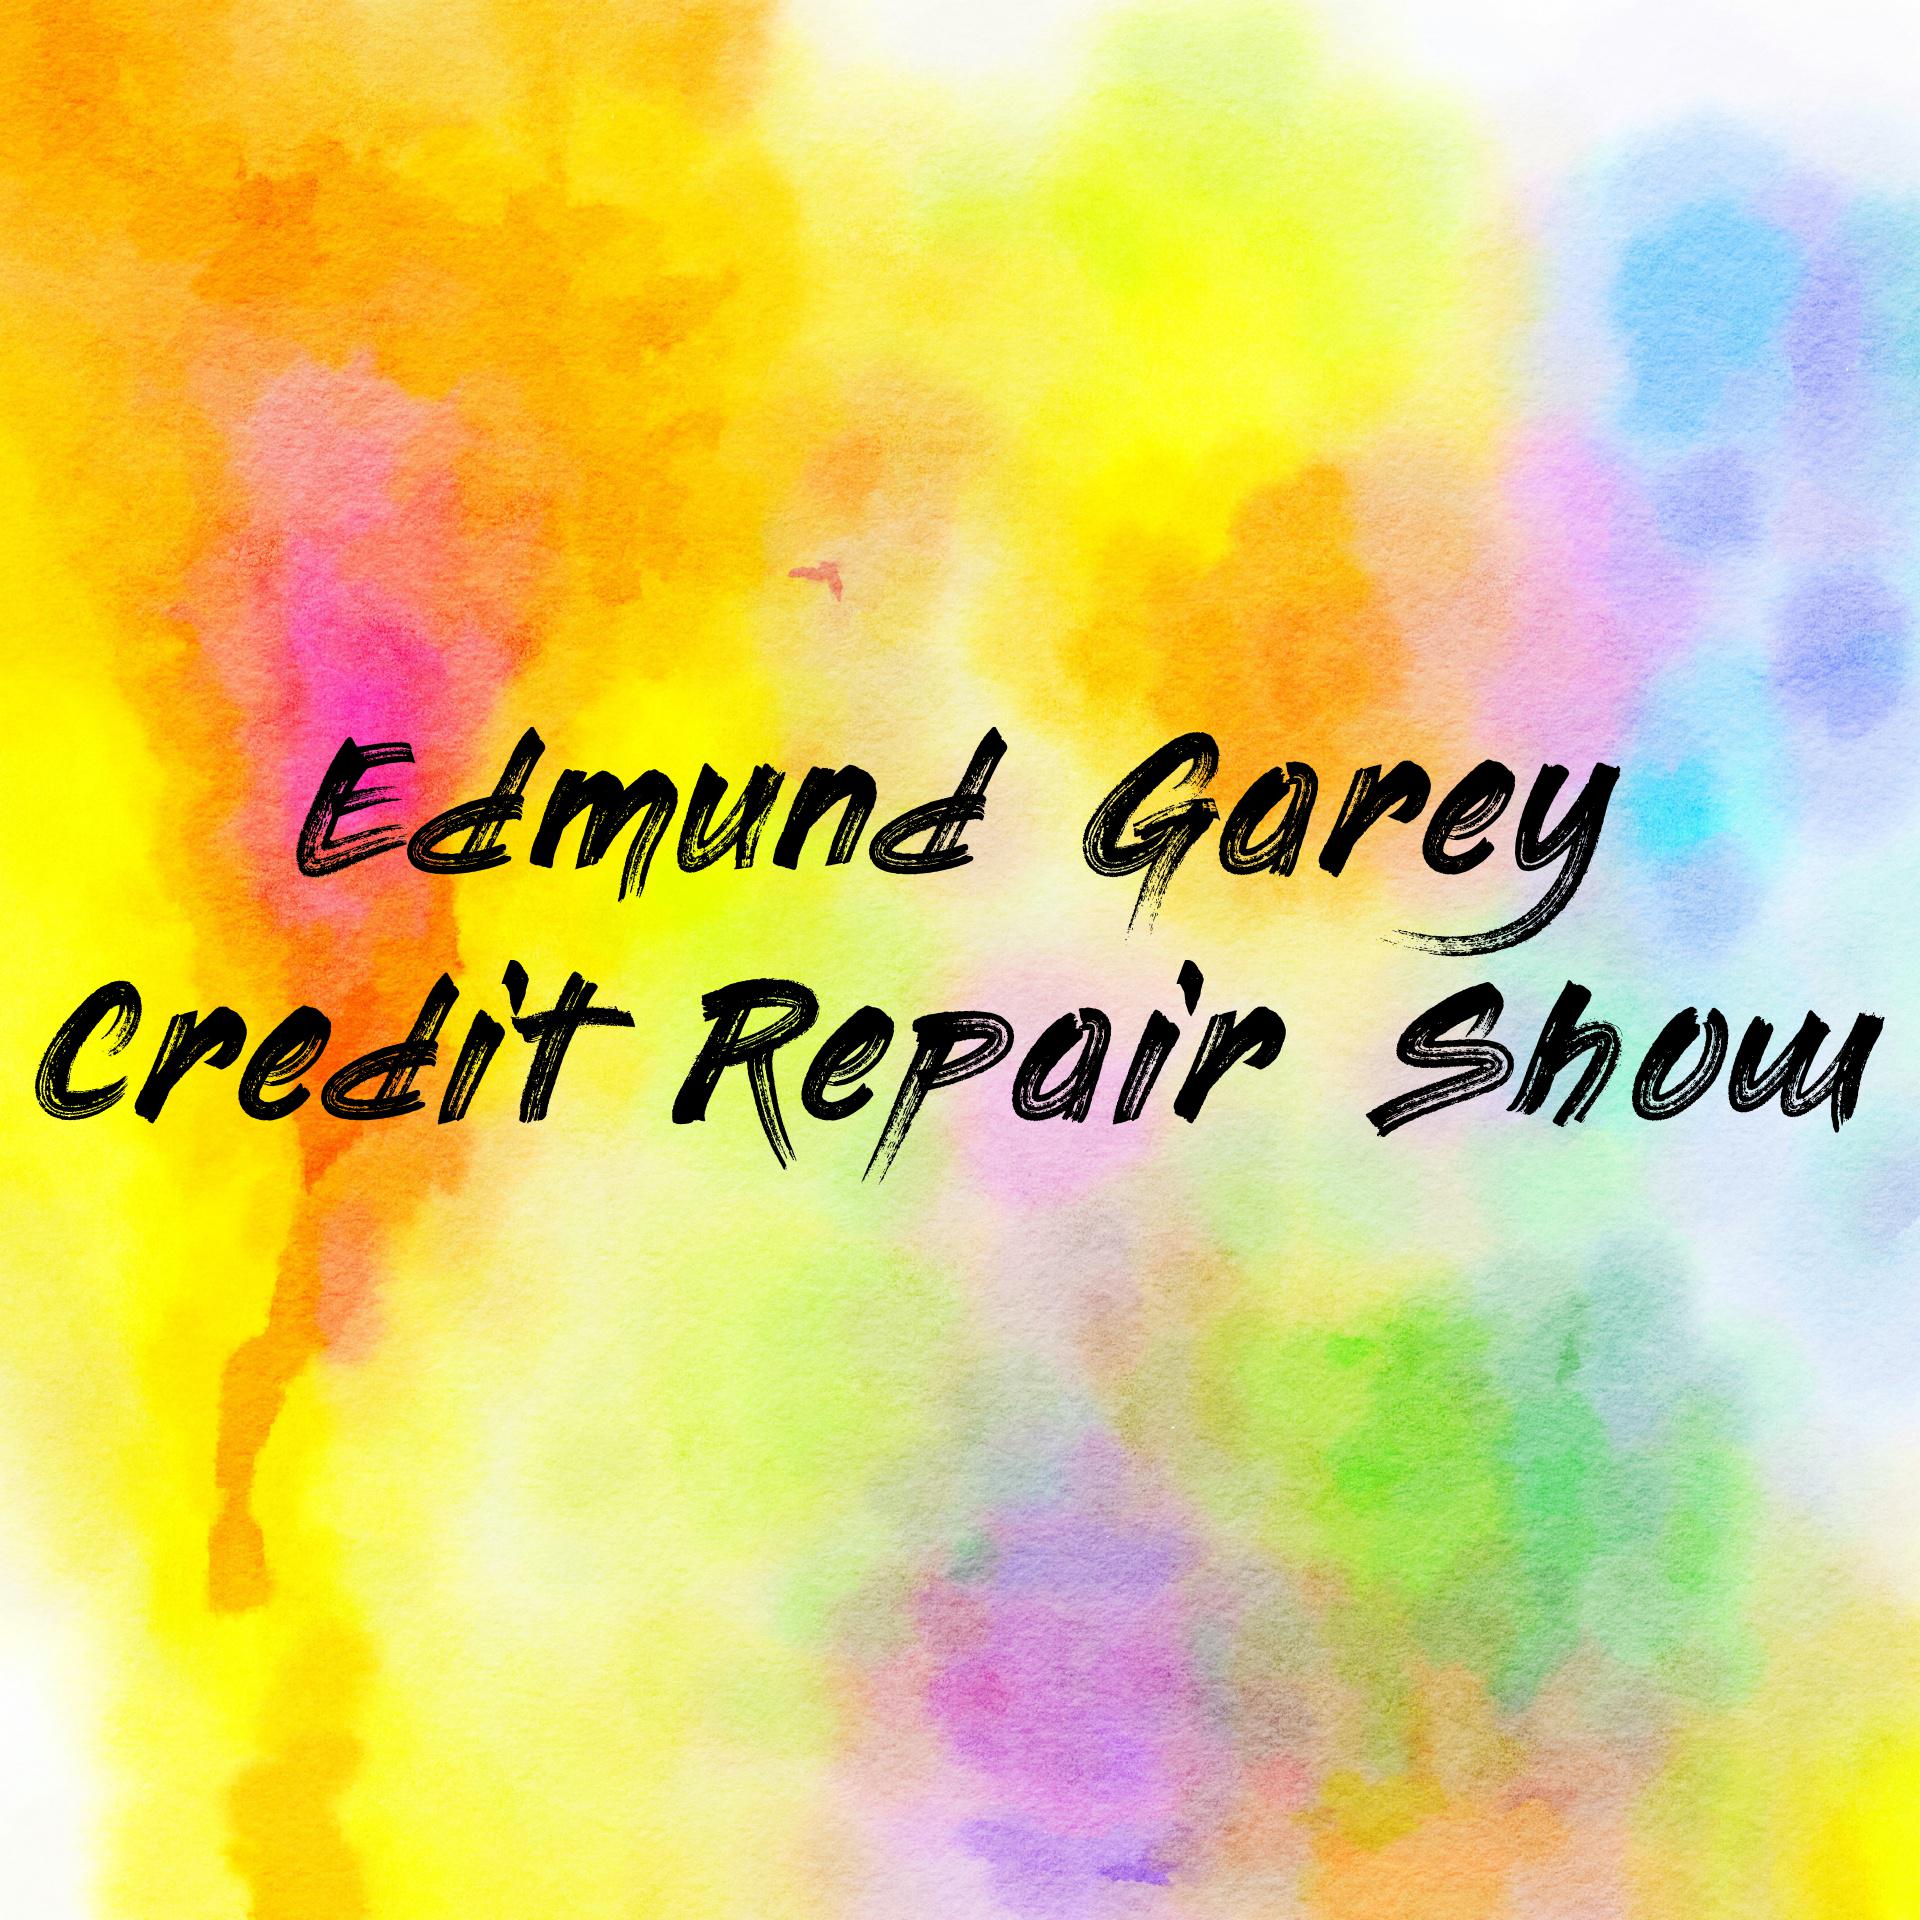 Edmund Garey Credit Repair Show